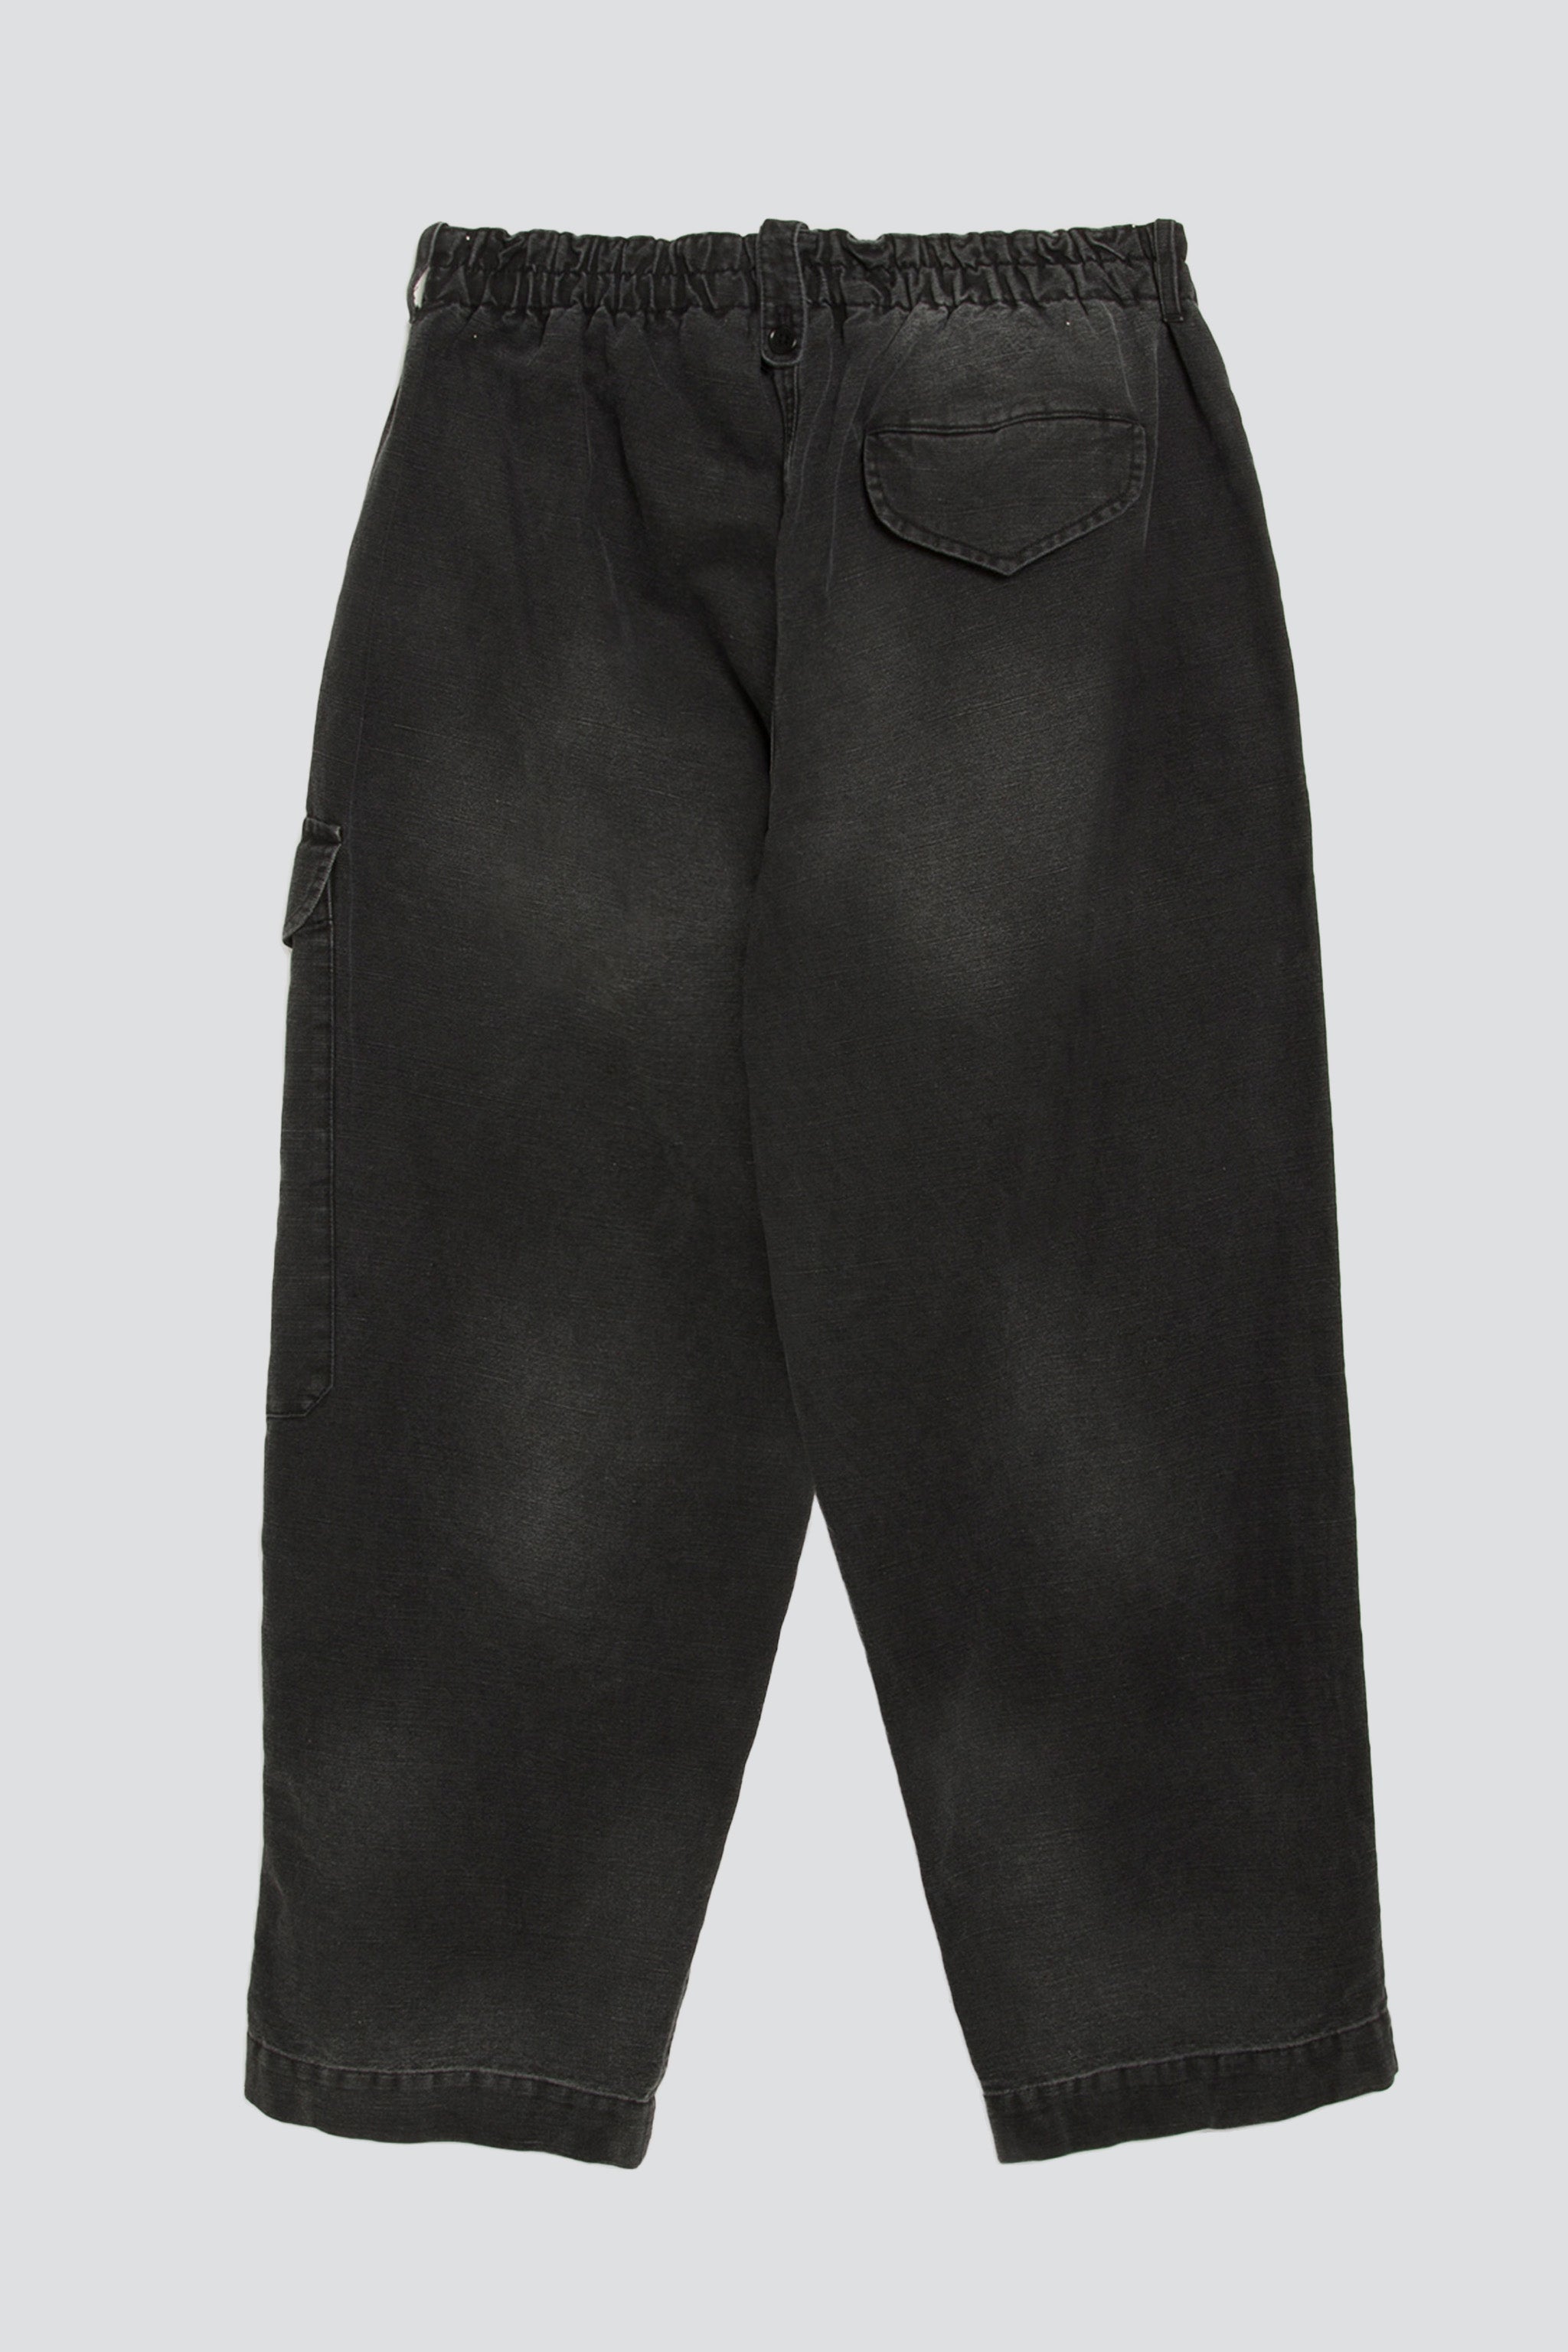 Black Military Trouser